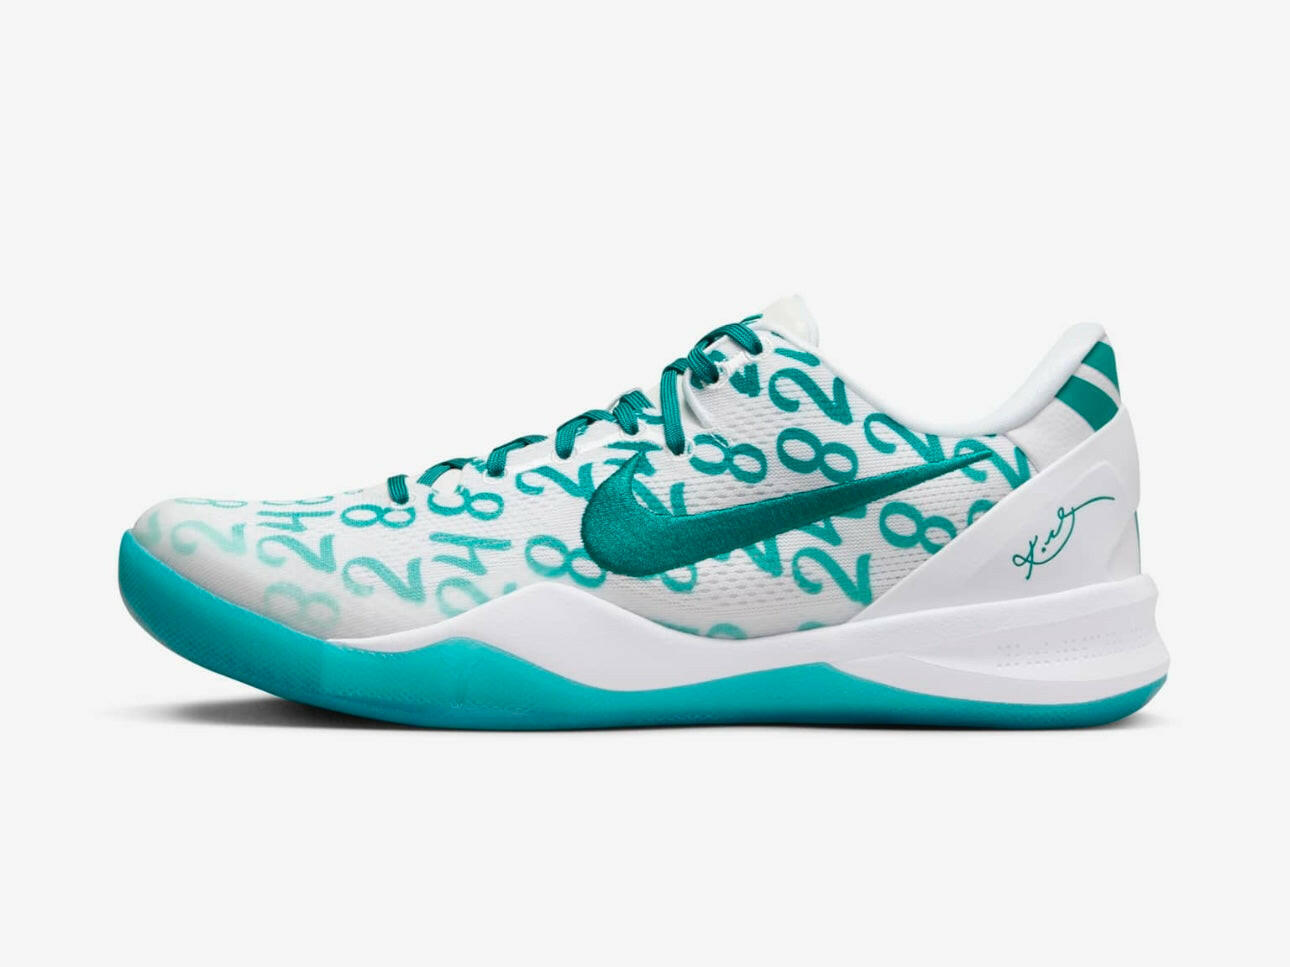 Kobe 8 Protro White 'Radiant Emerald' Basketball Shoes for Men